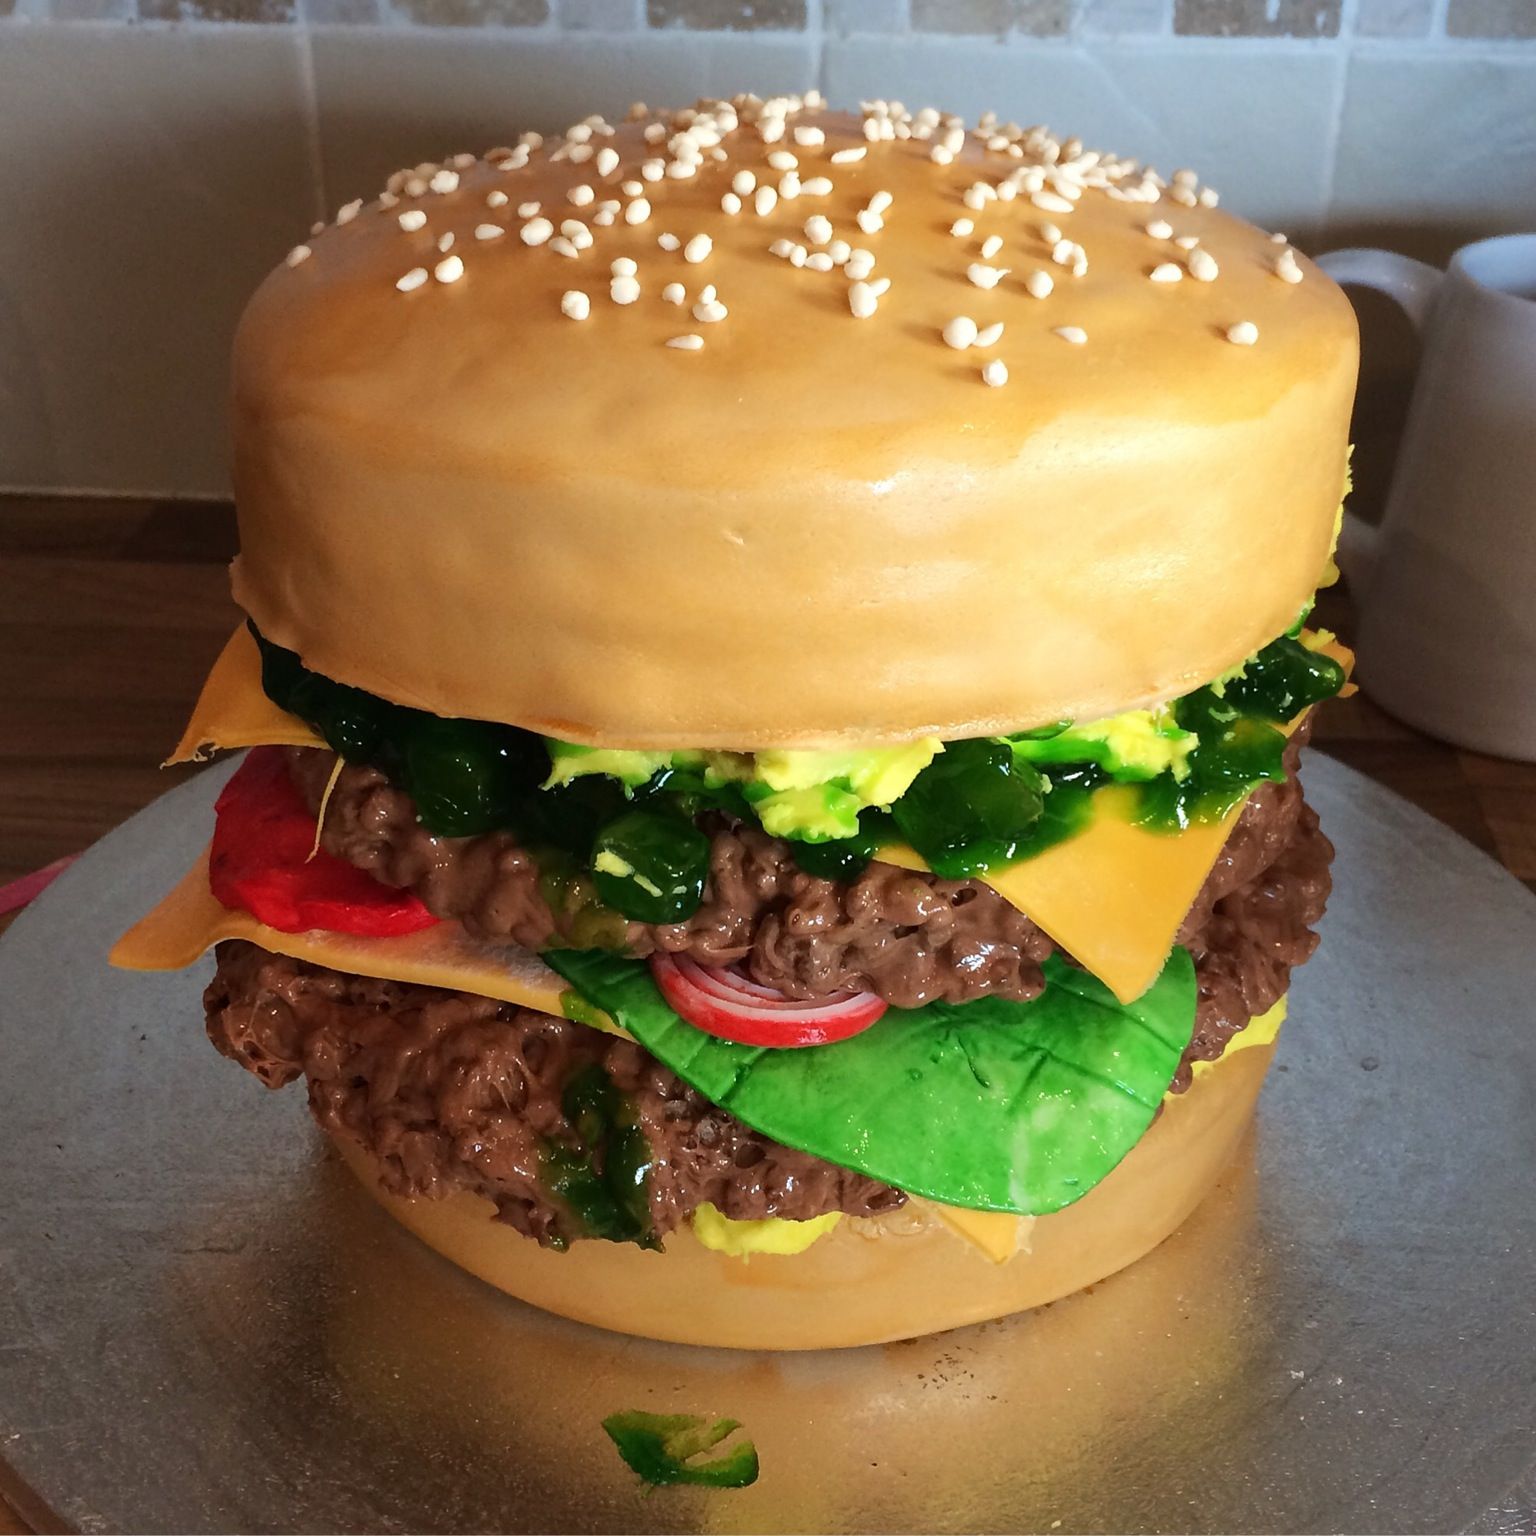 Big Burger Cake Recipe - BettyCrocker.com